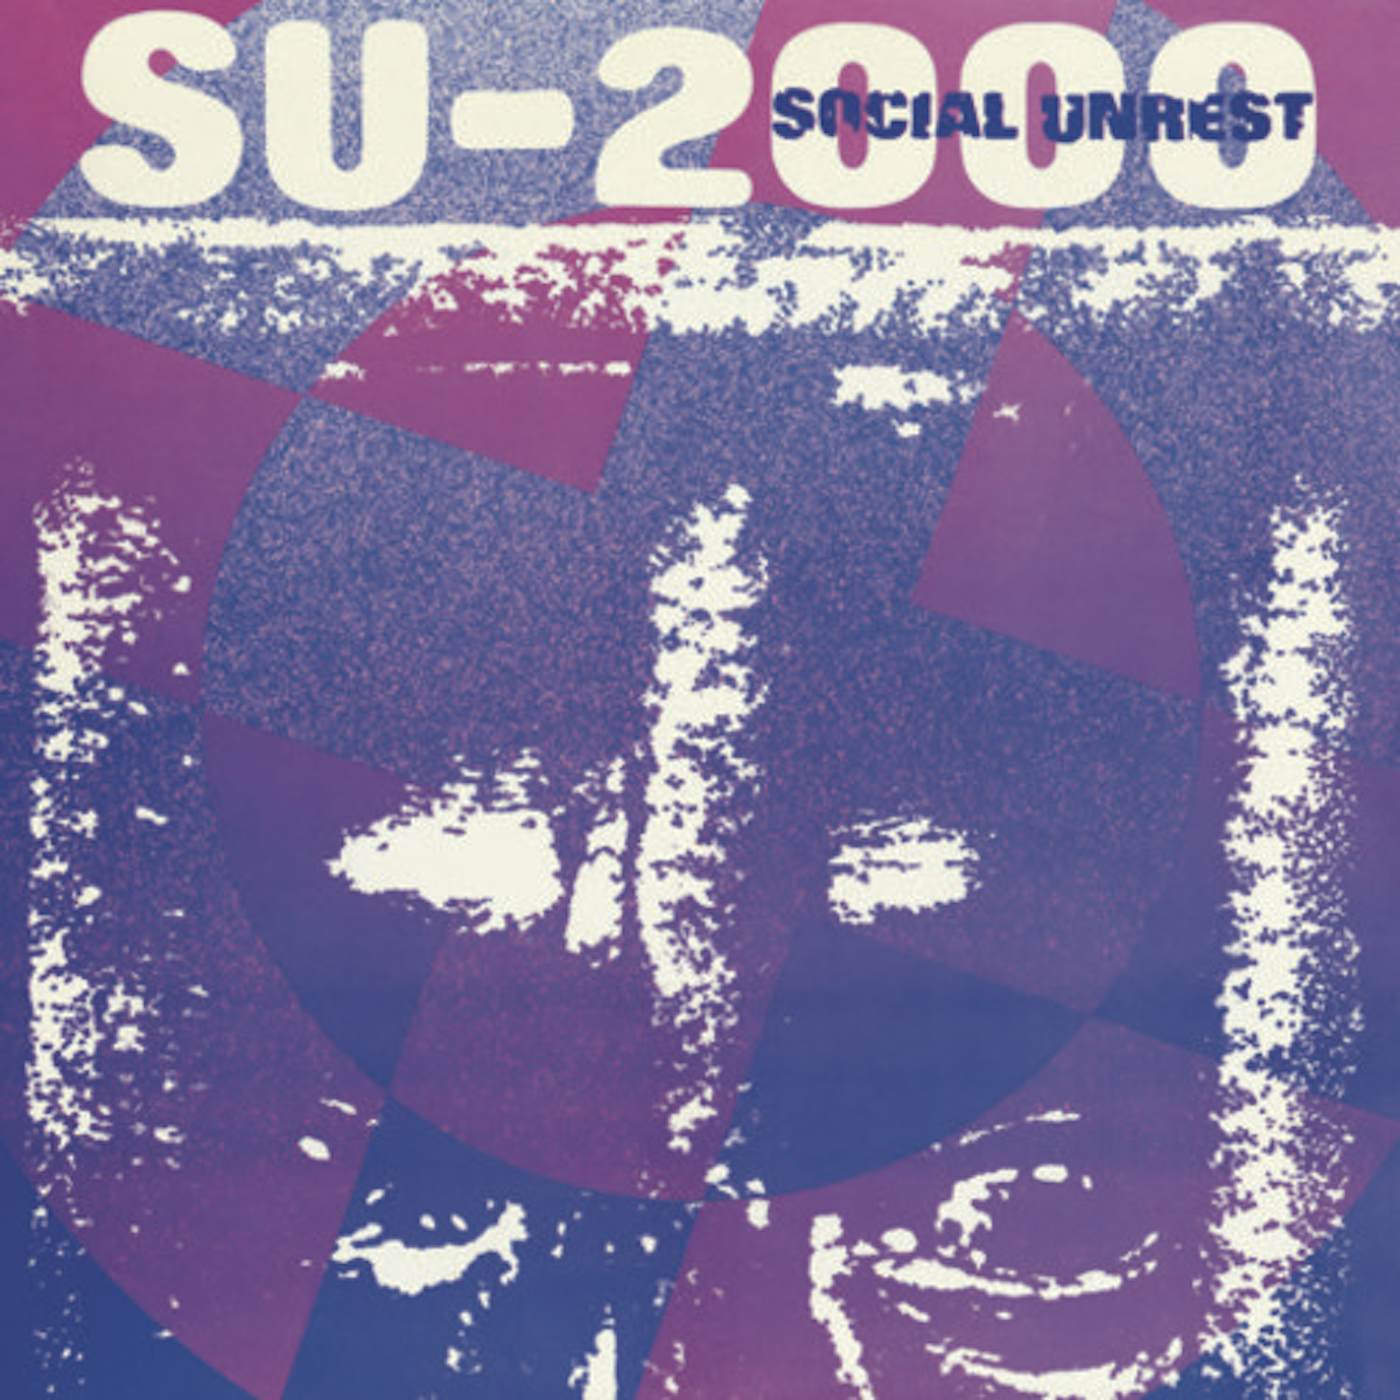 Social Unrest SU-2000 Vinyl Record